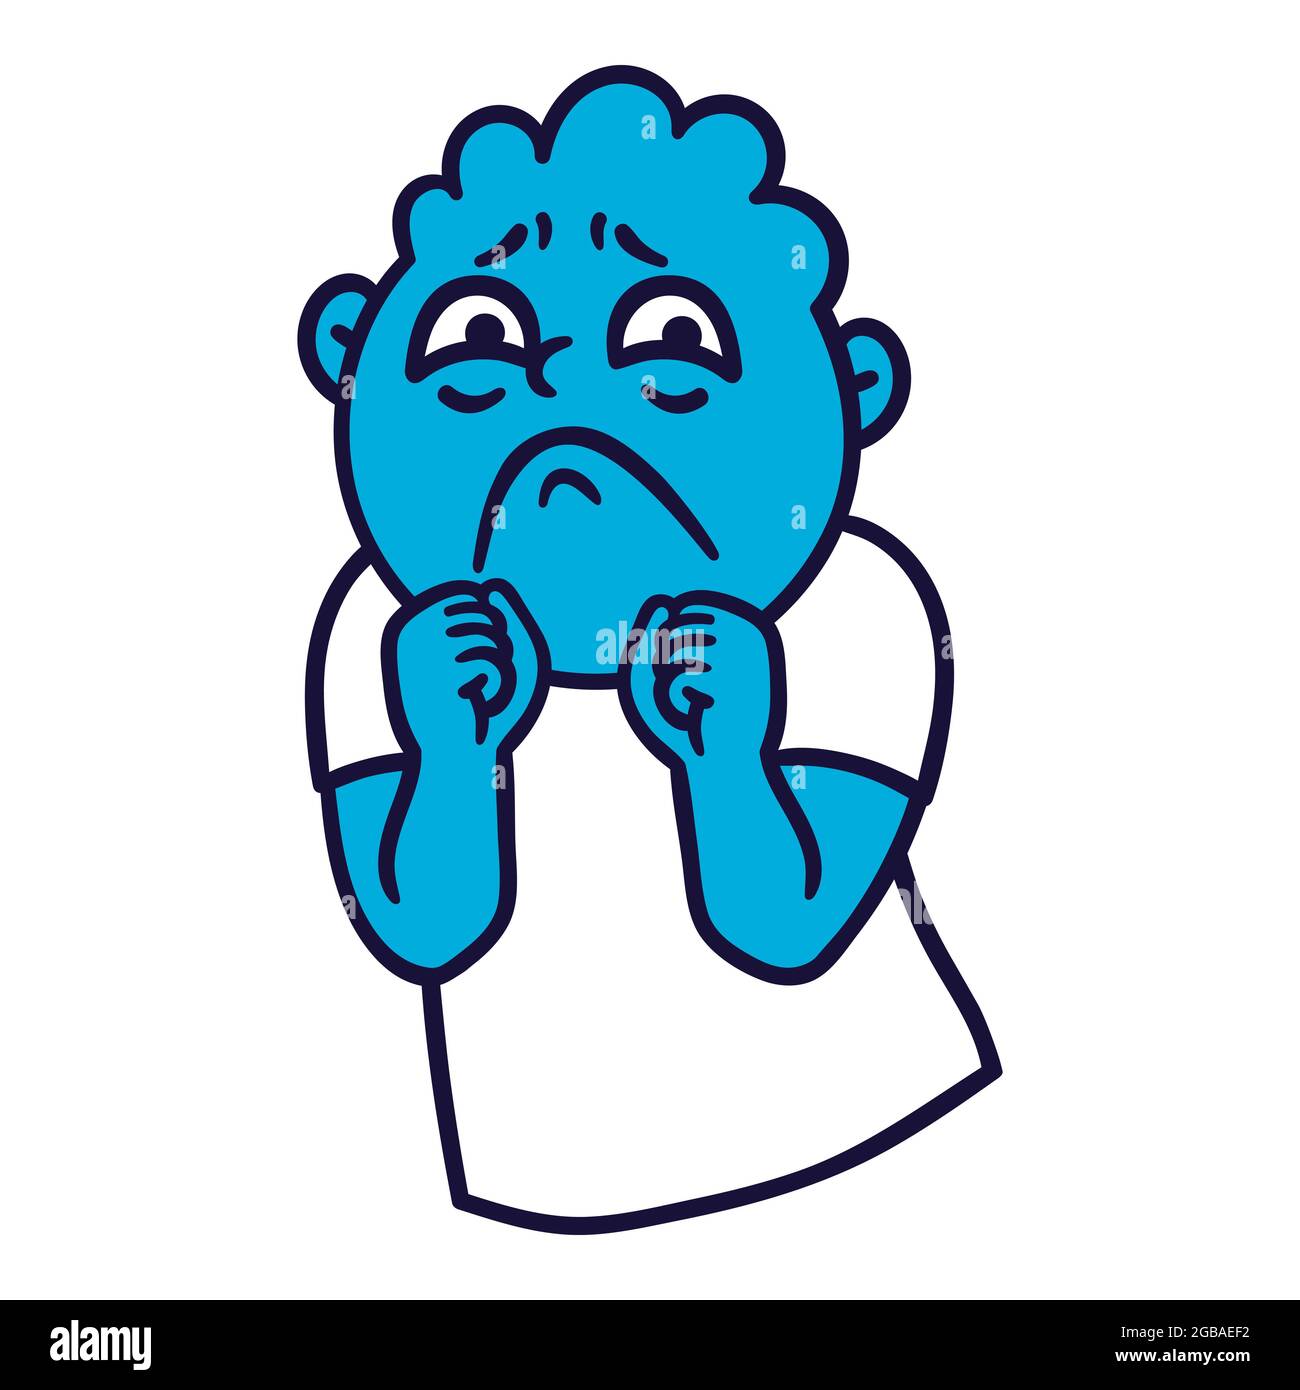 Homme avec des émotions tristes. Avatar Emoji sorrow. Portrait d'une personne contrariée. Style de dessin animé. Illustration vectorielle plate. Illustration de Vecteur